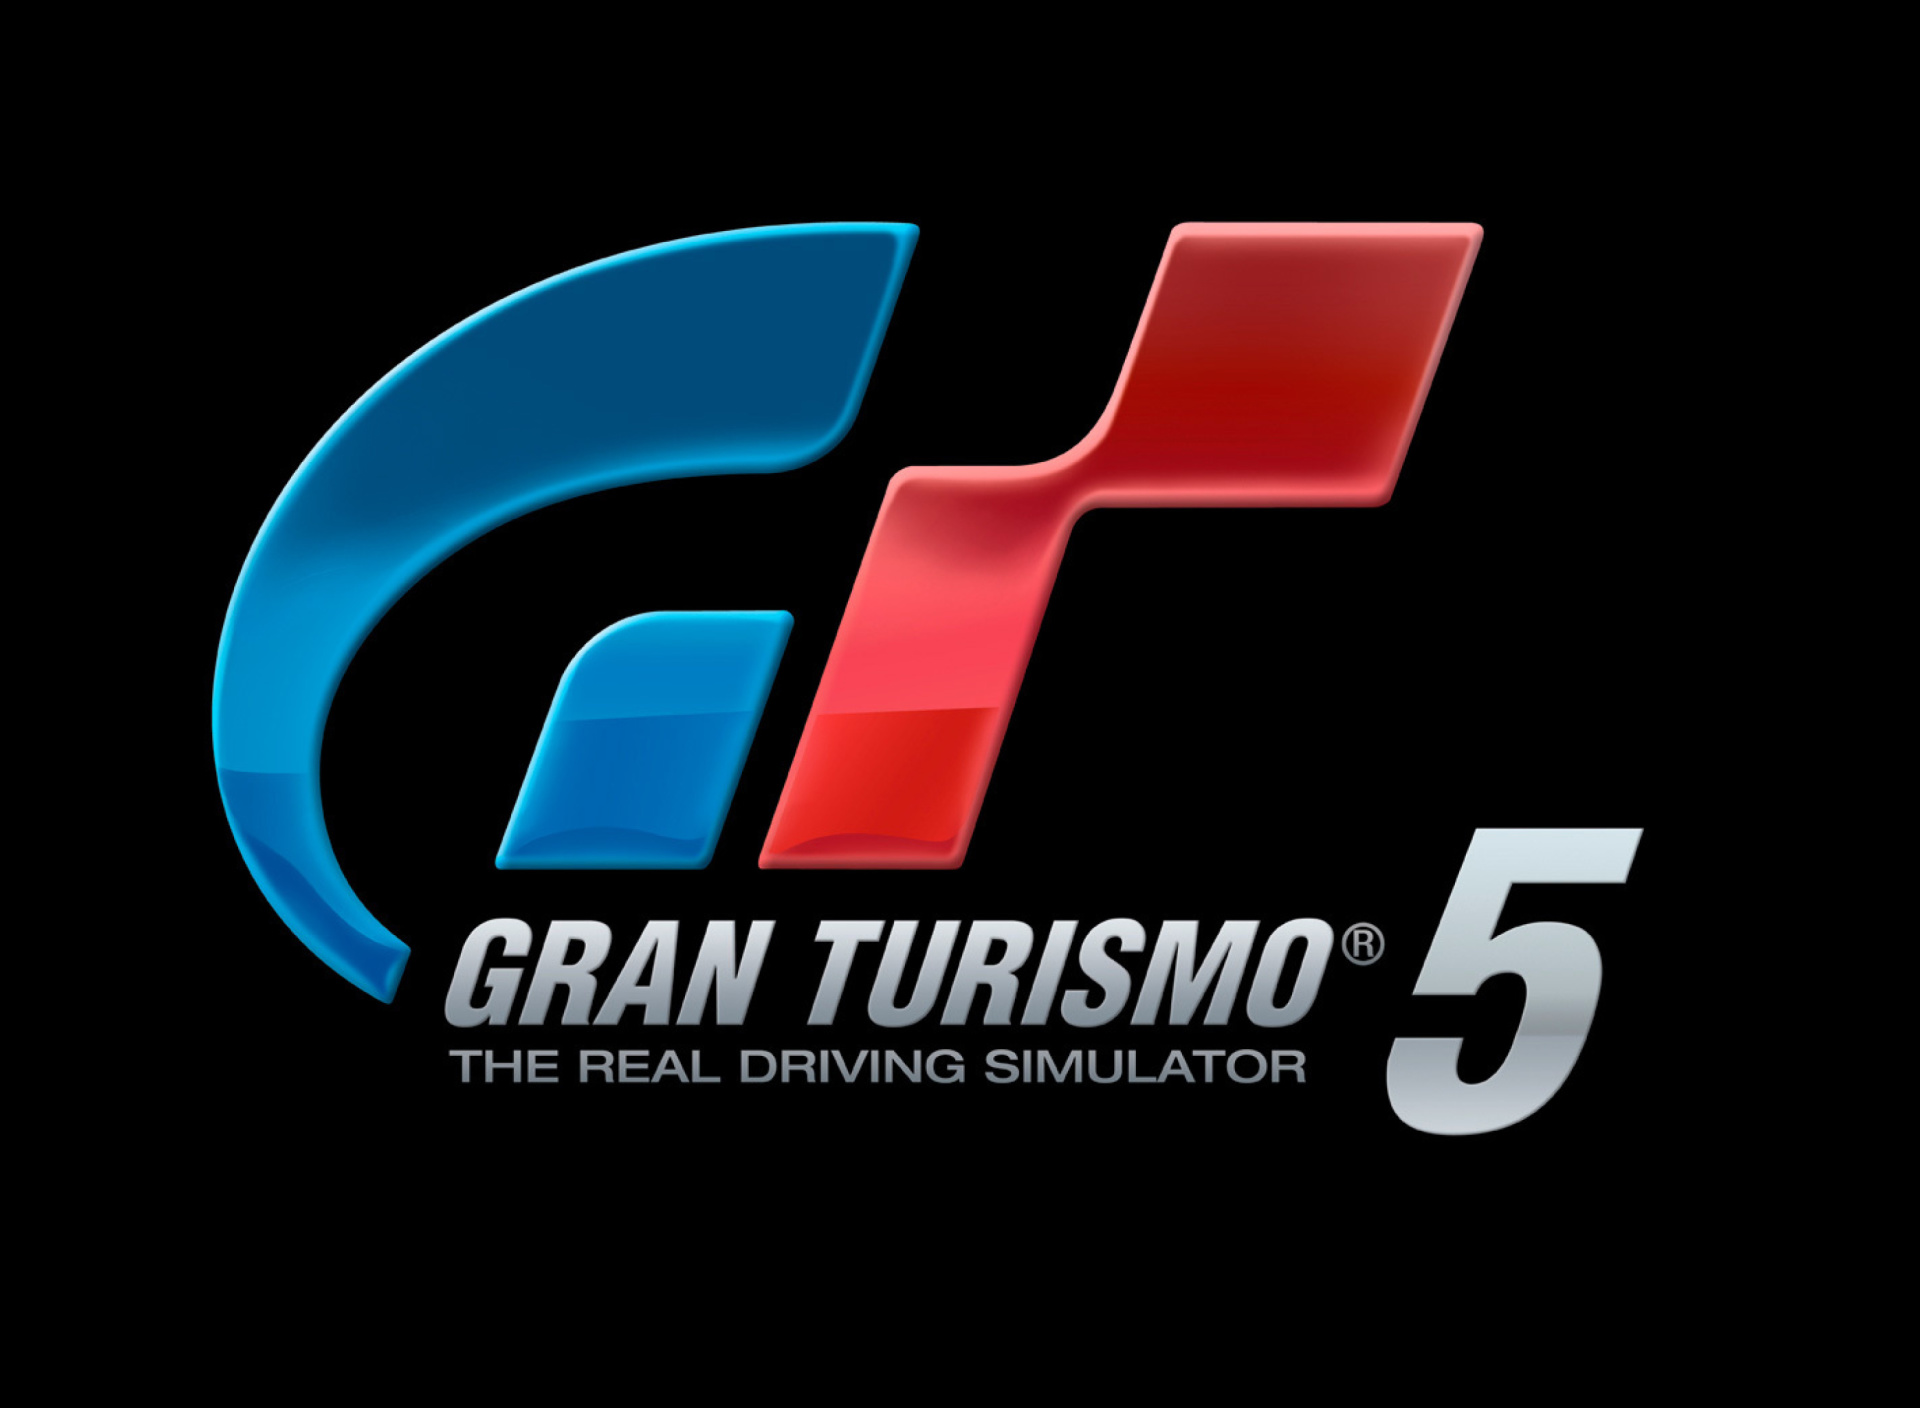 Gran Turismo 5 Driving Simulator wallpaper 1920x1408